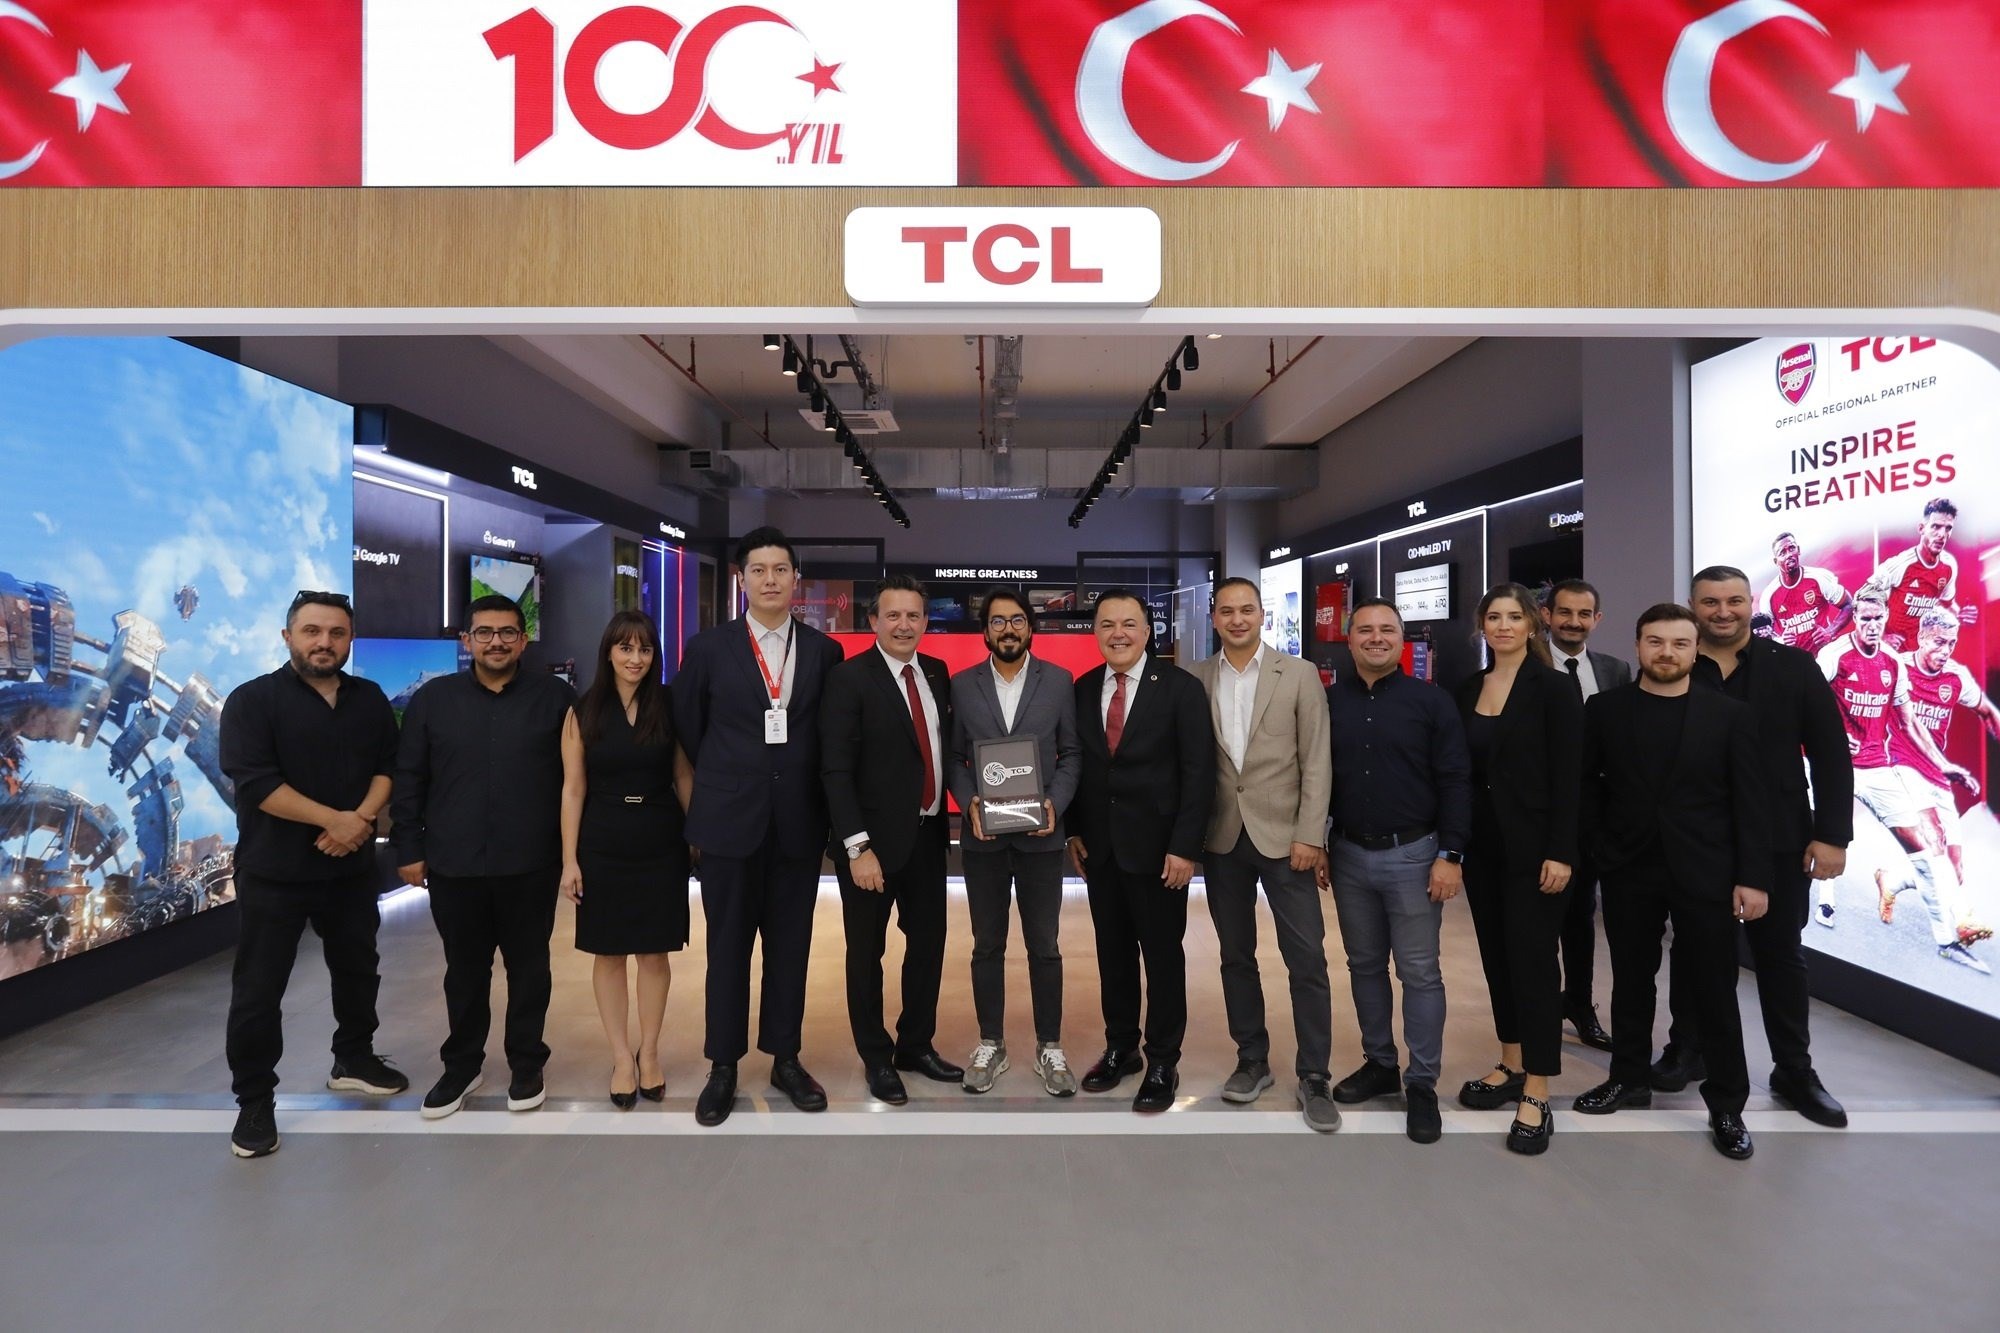 TCL Türkiye Müdürü Serhan Tunca'ya yeni görev:17 ülkeyi yönetecek